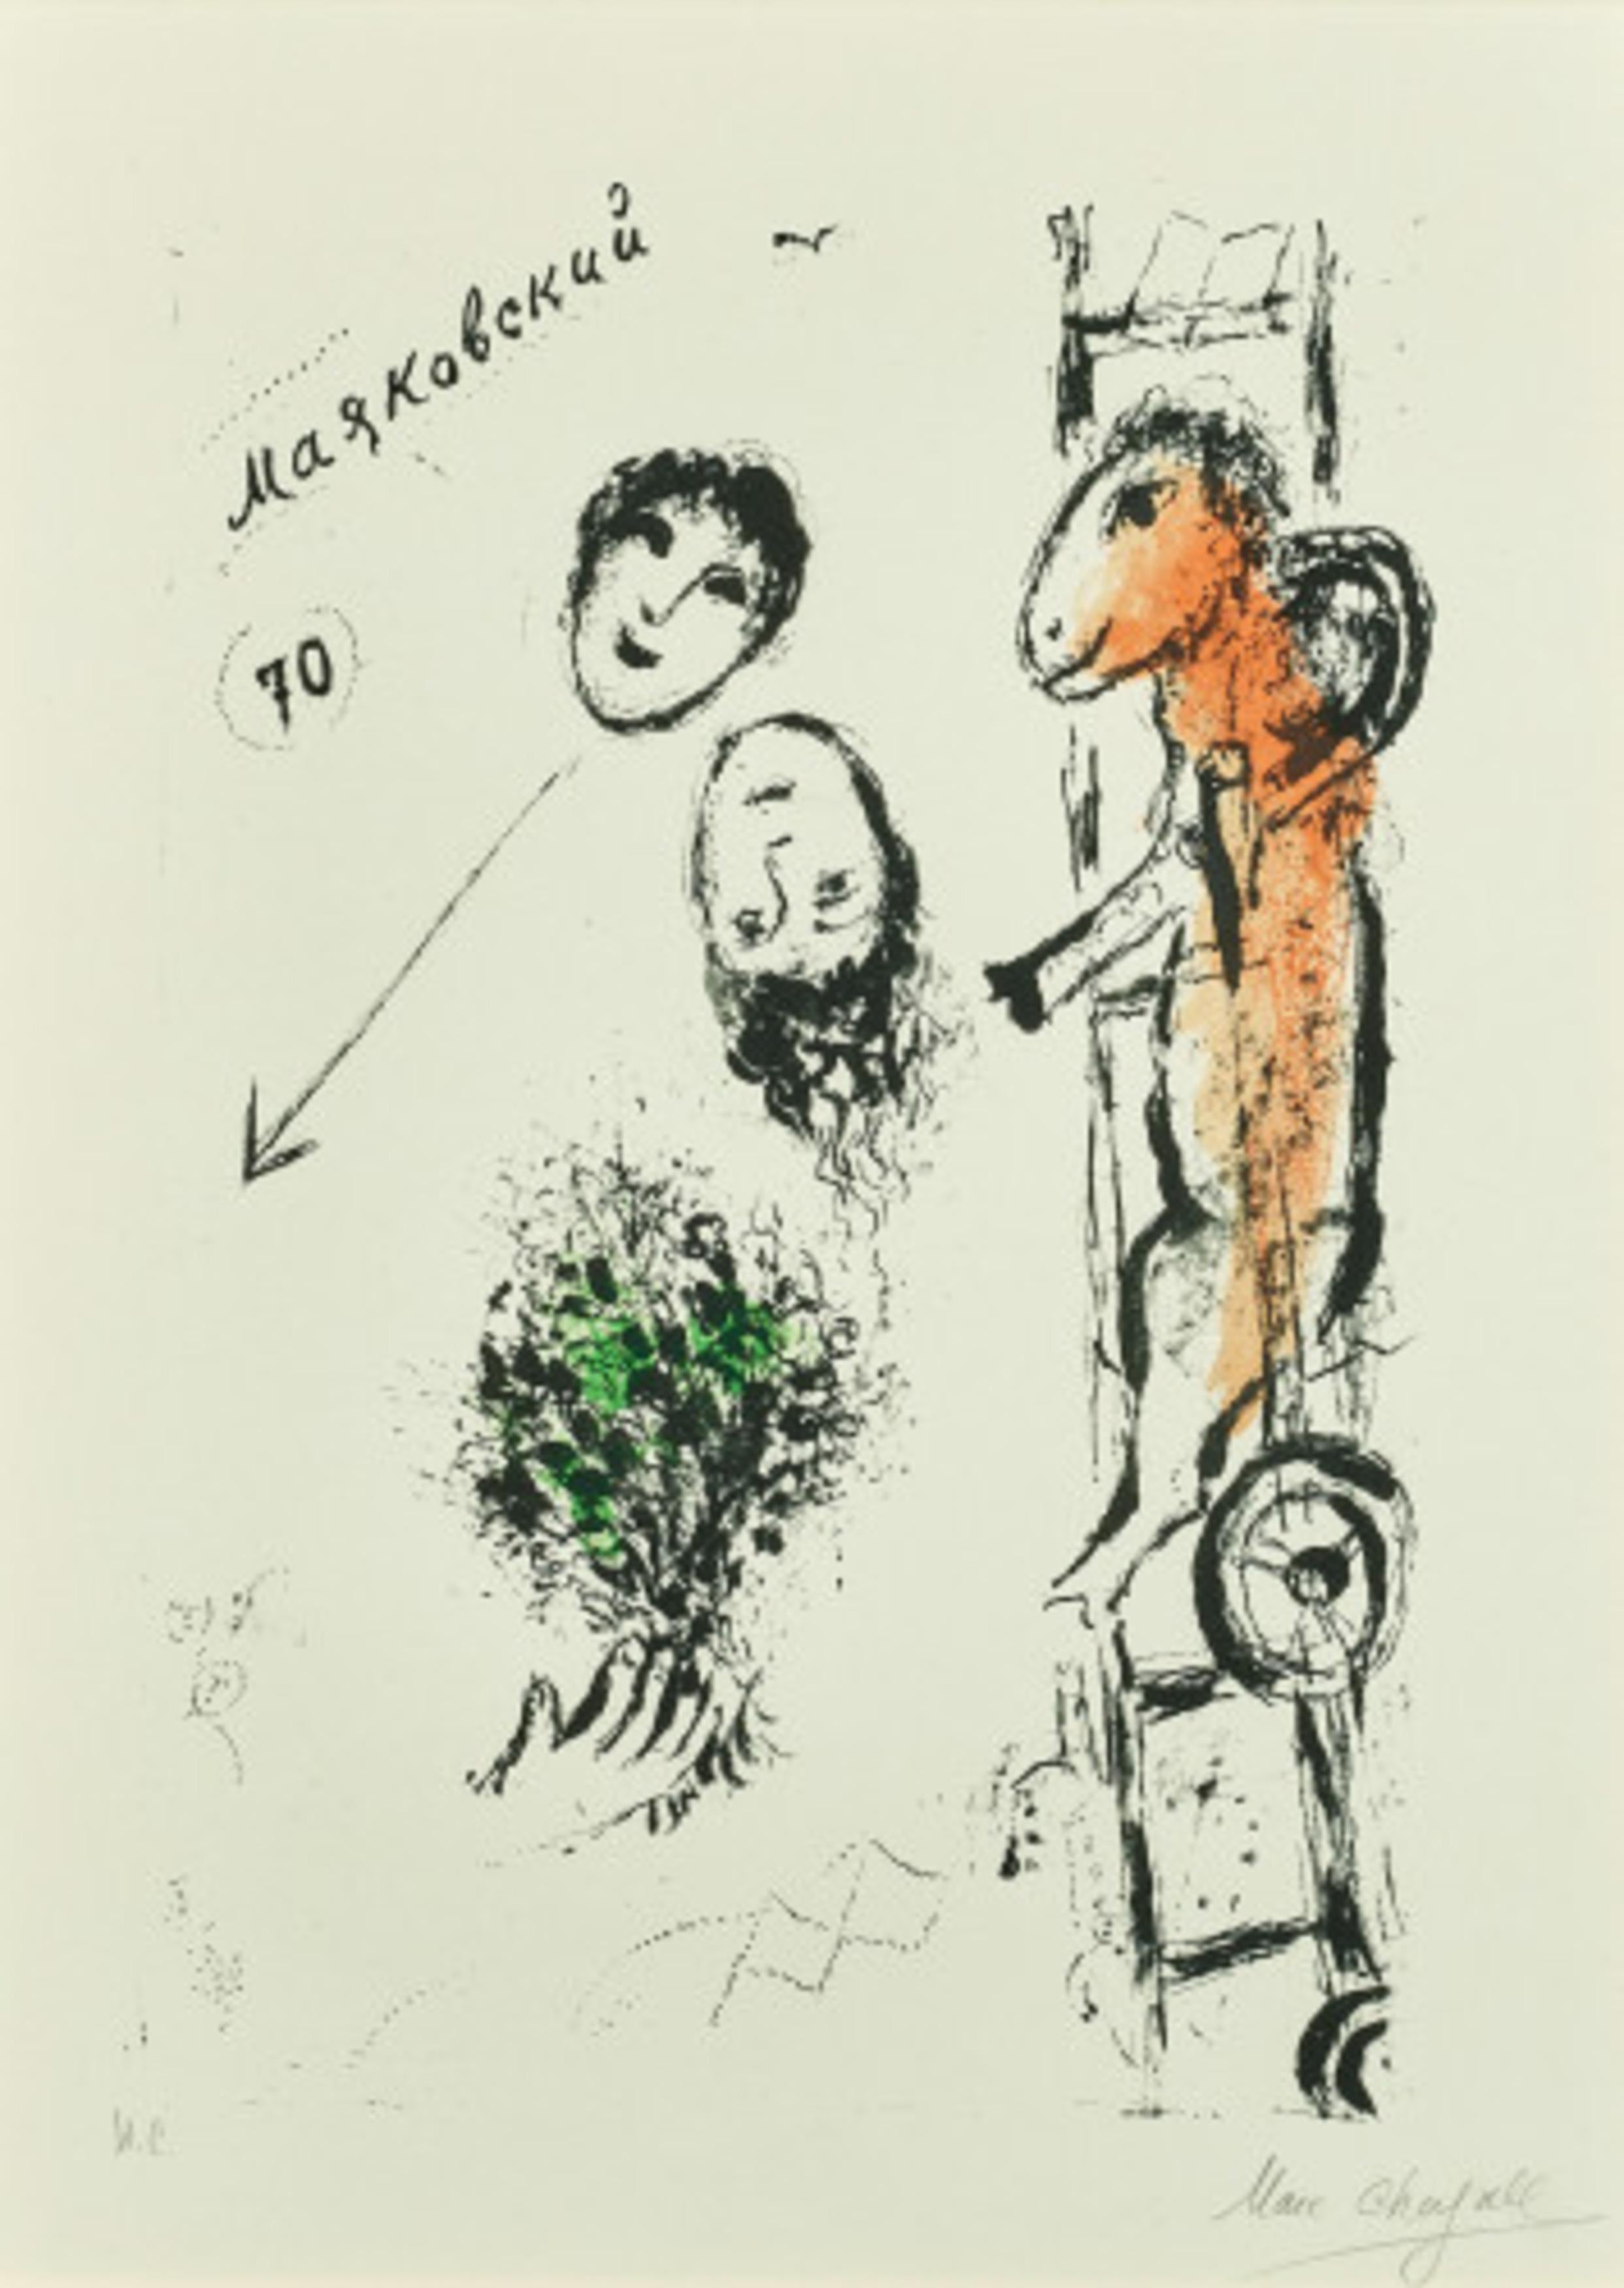 Majakovski - Print by Marc Chagall